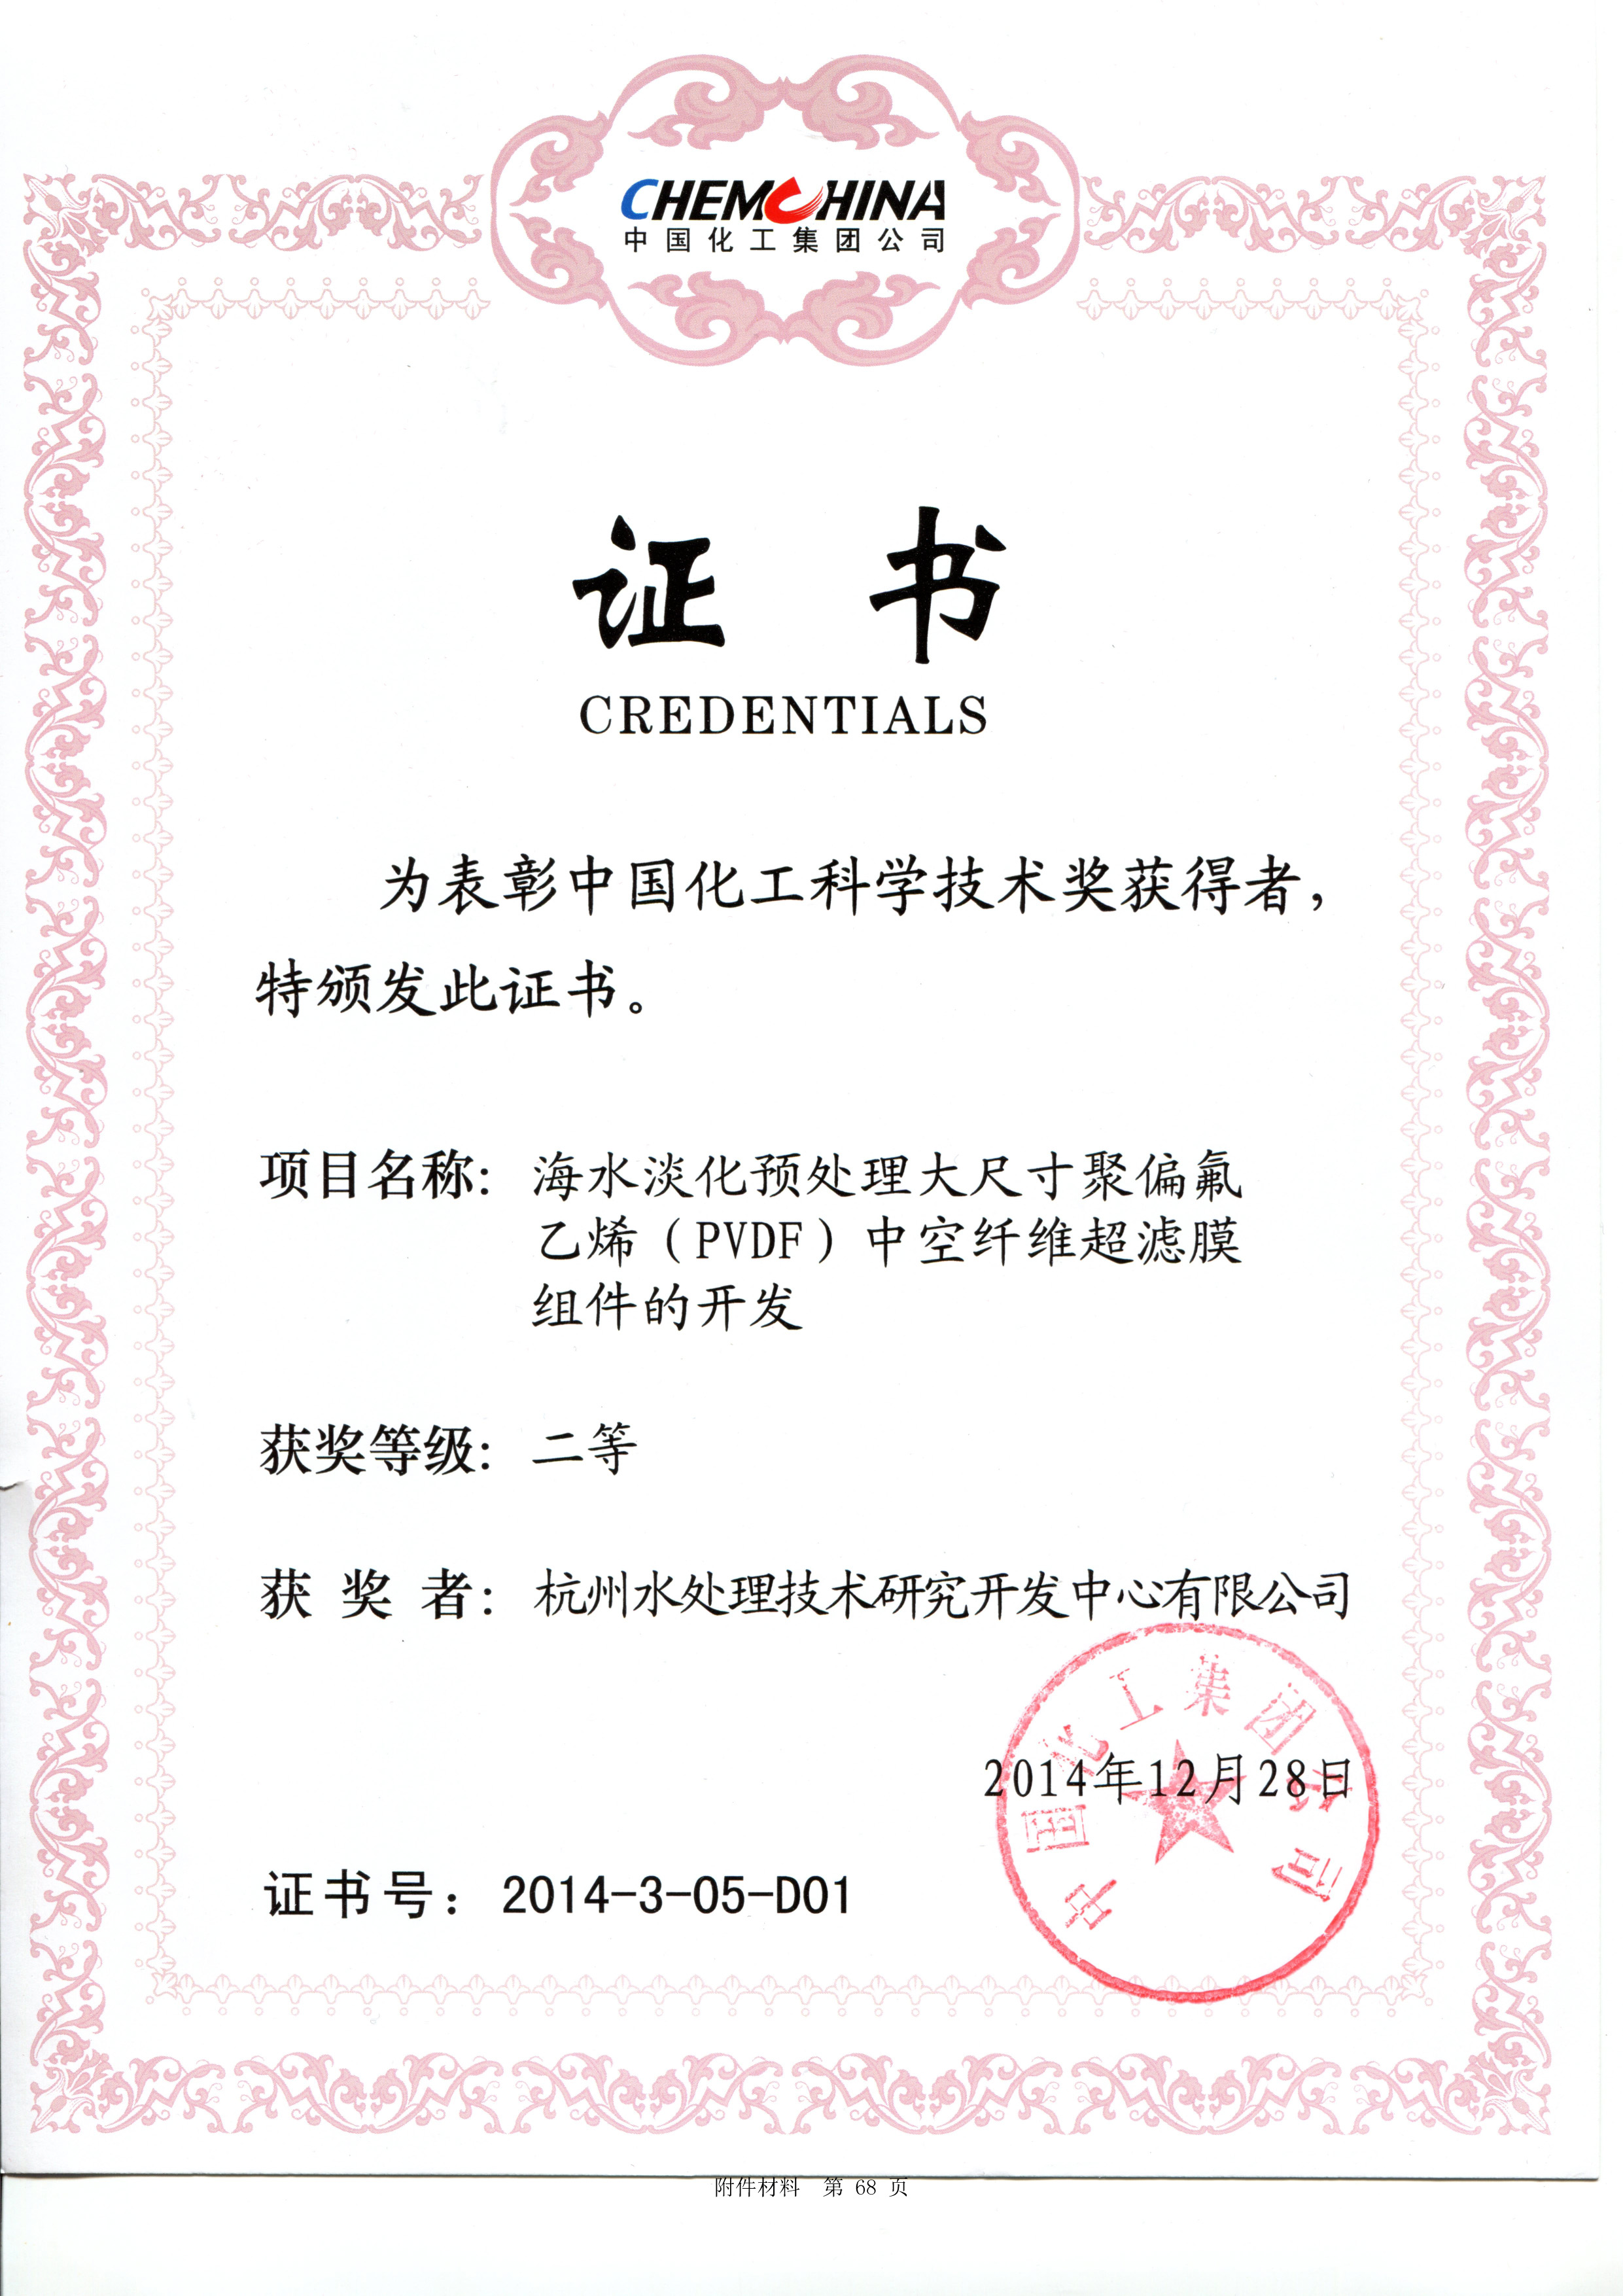 中国化工科学技术二等奖2014